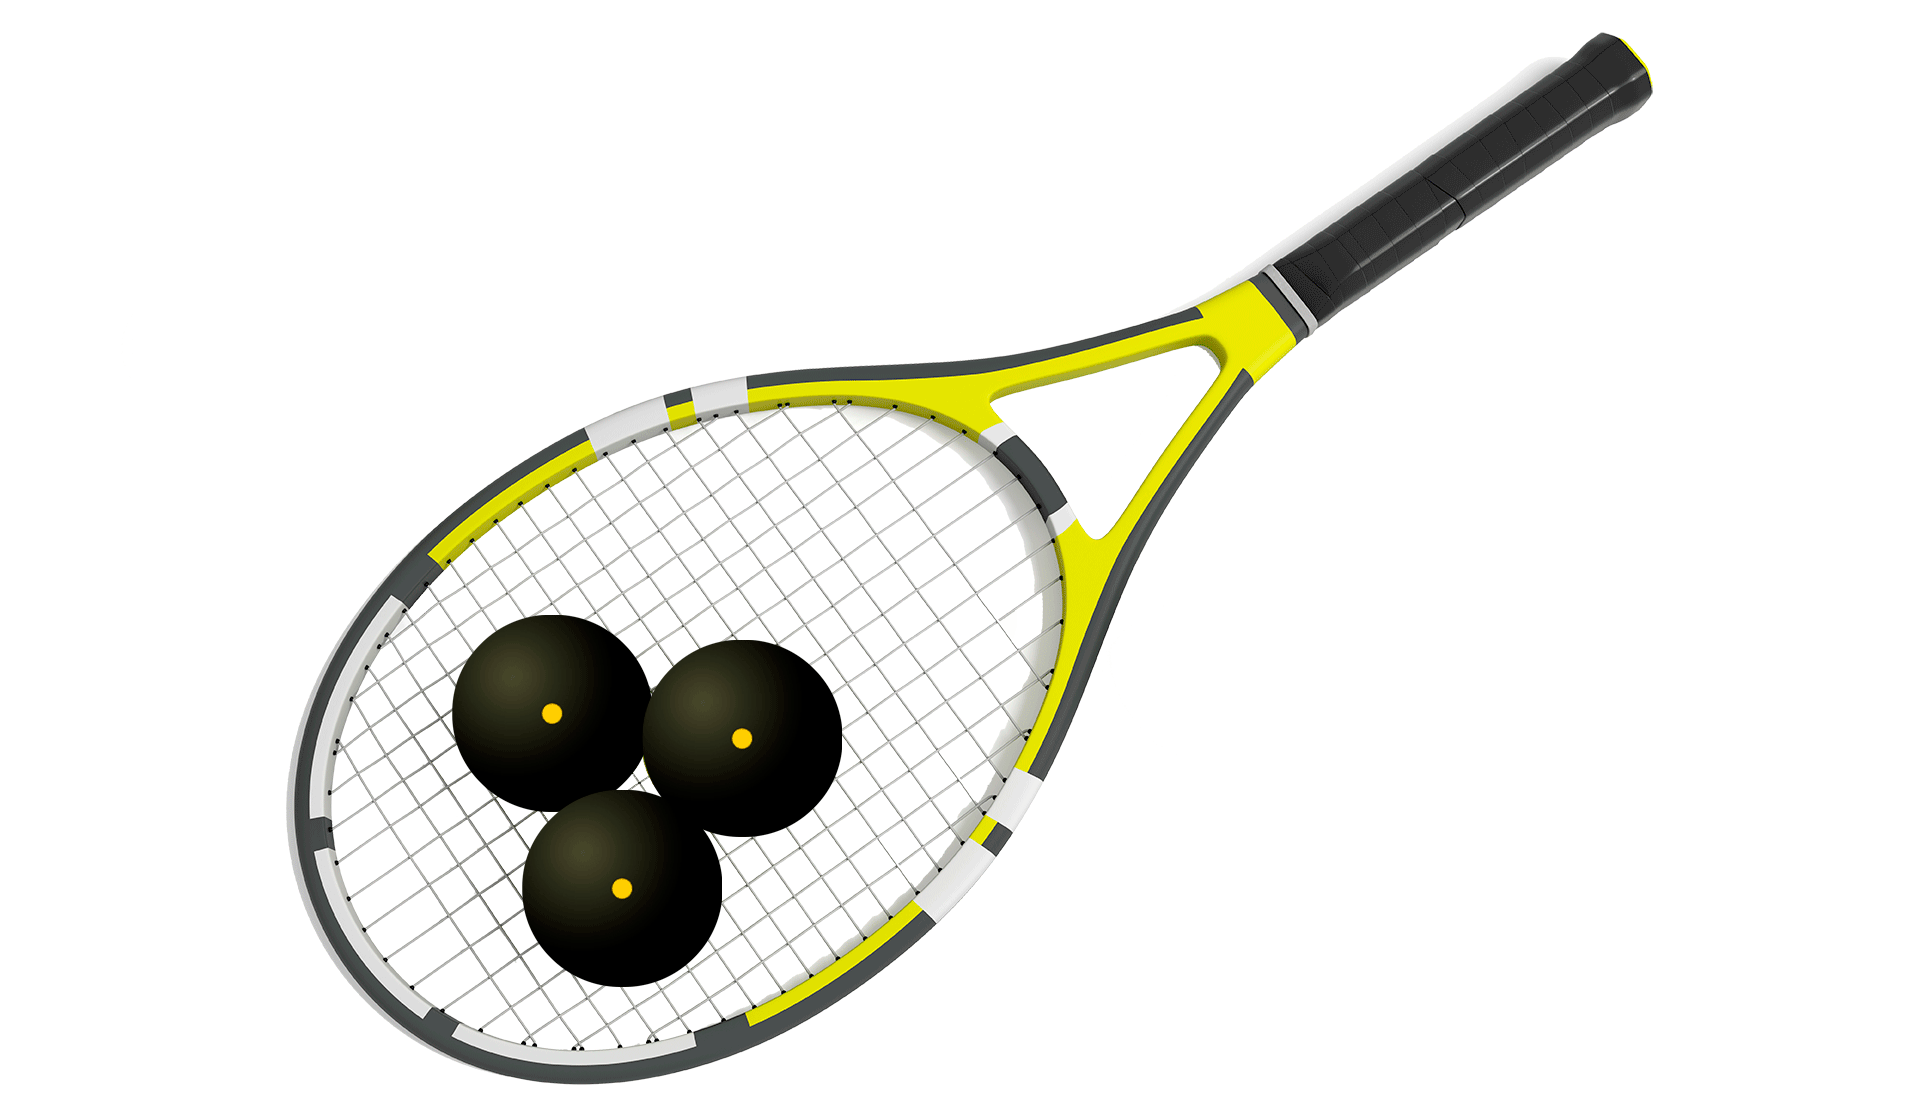 Raqueta squash